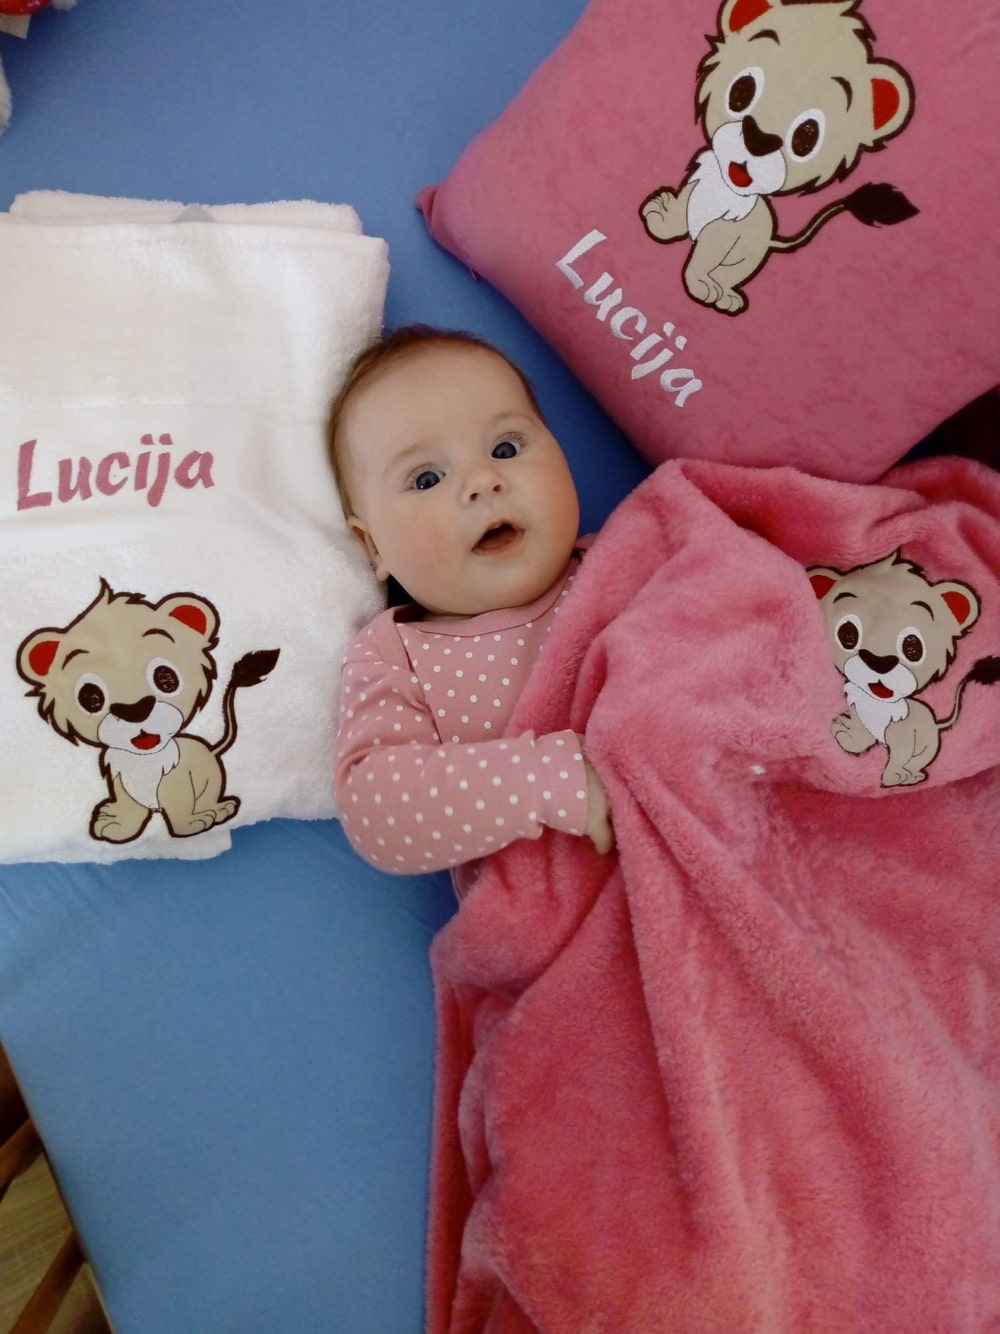 Očarljiva dojenčica uživa v svojem personaliziranem setu, ki vključuje blazino, odejo in brisačo, vse tri pa so prilagojene z njenim imenom.